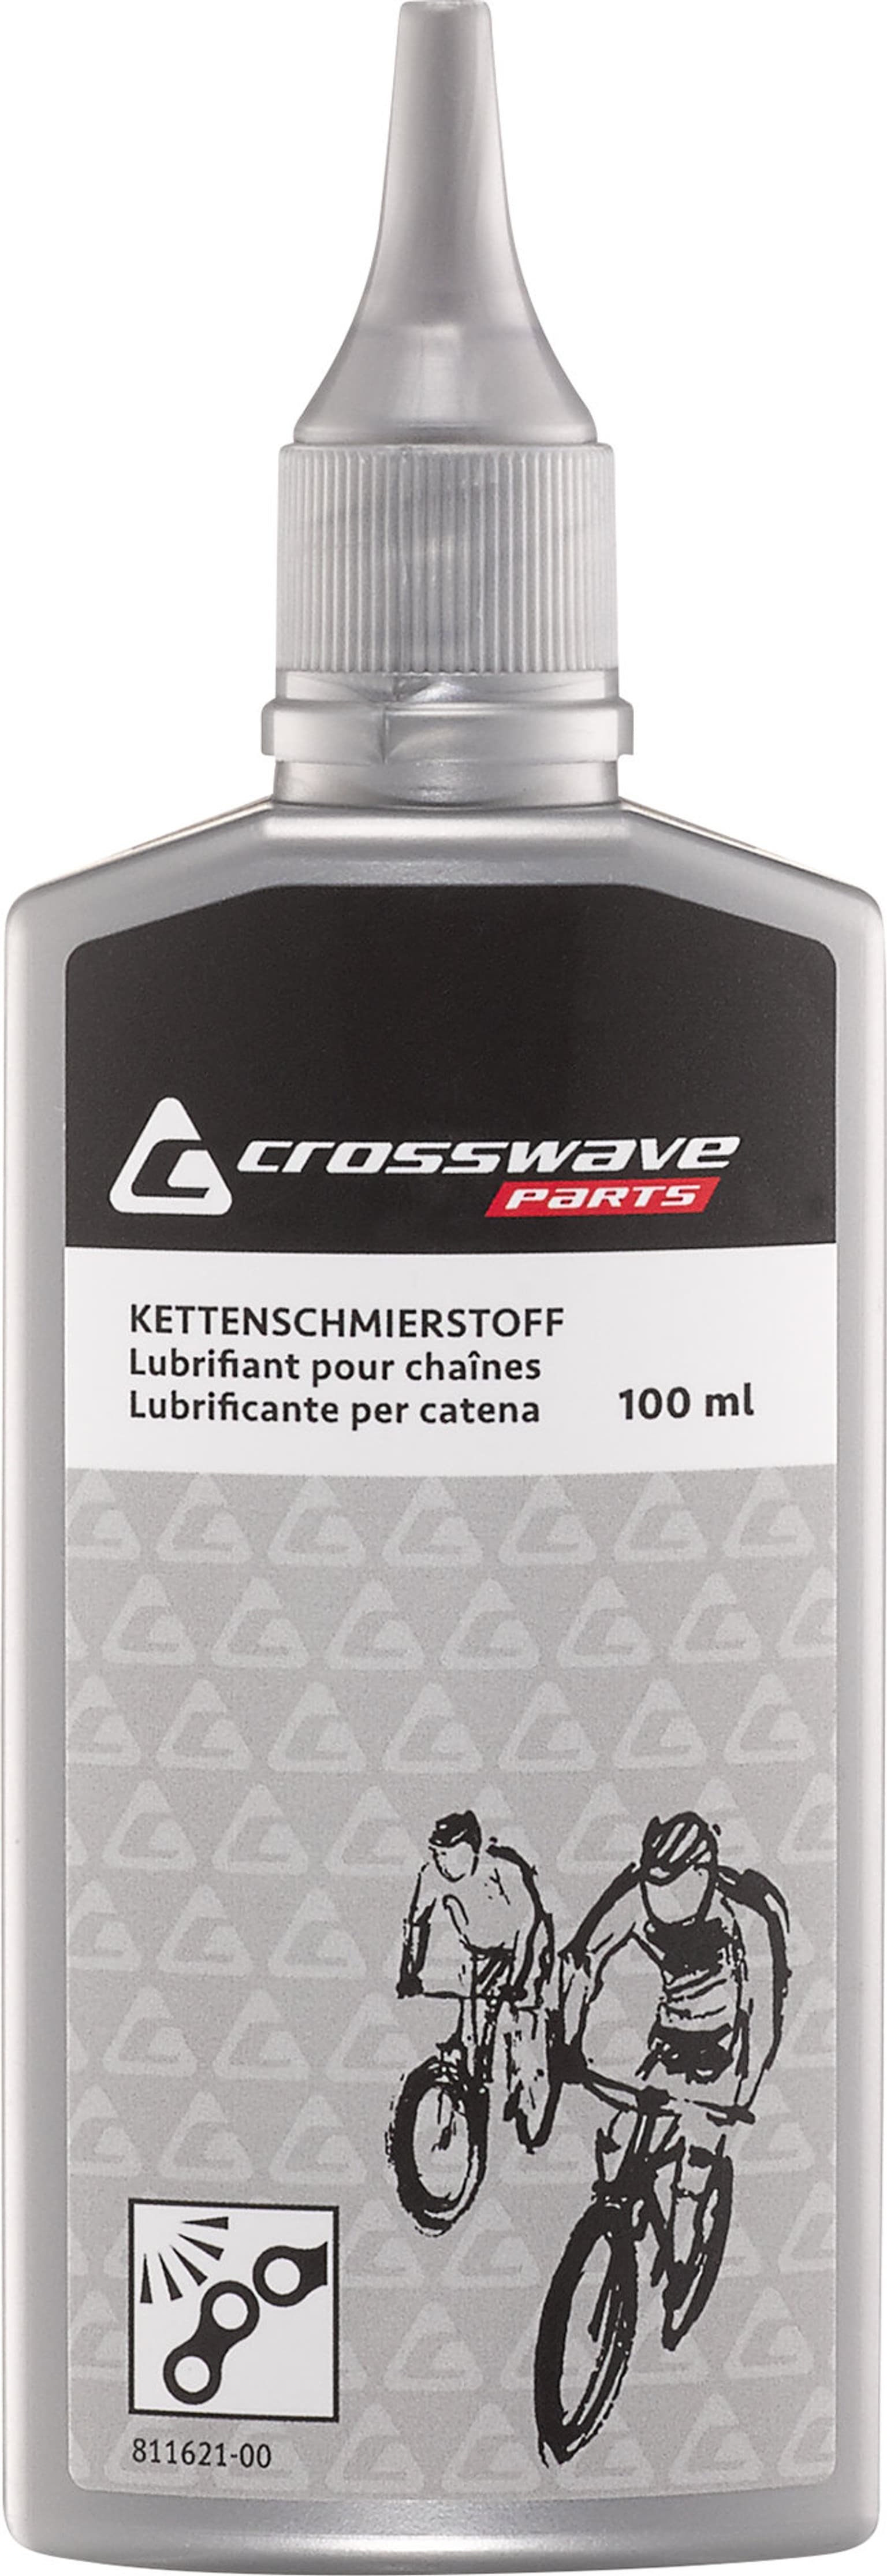 Crosswave Crosswave Ketten-Schmiermittel trocken Pflegemittel 1